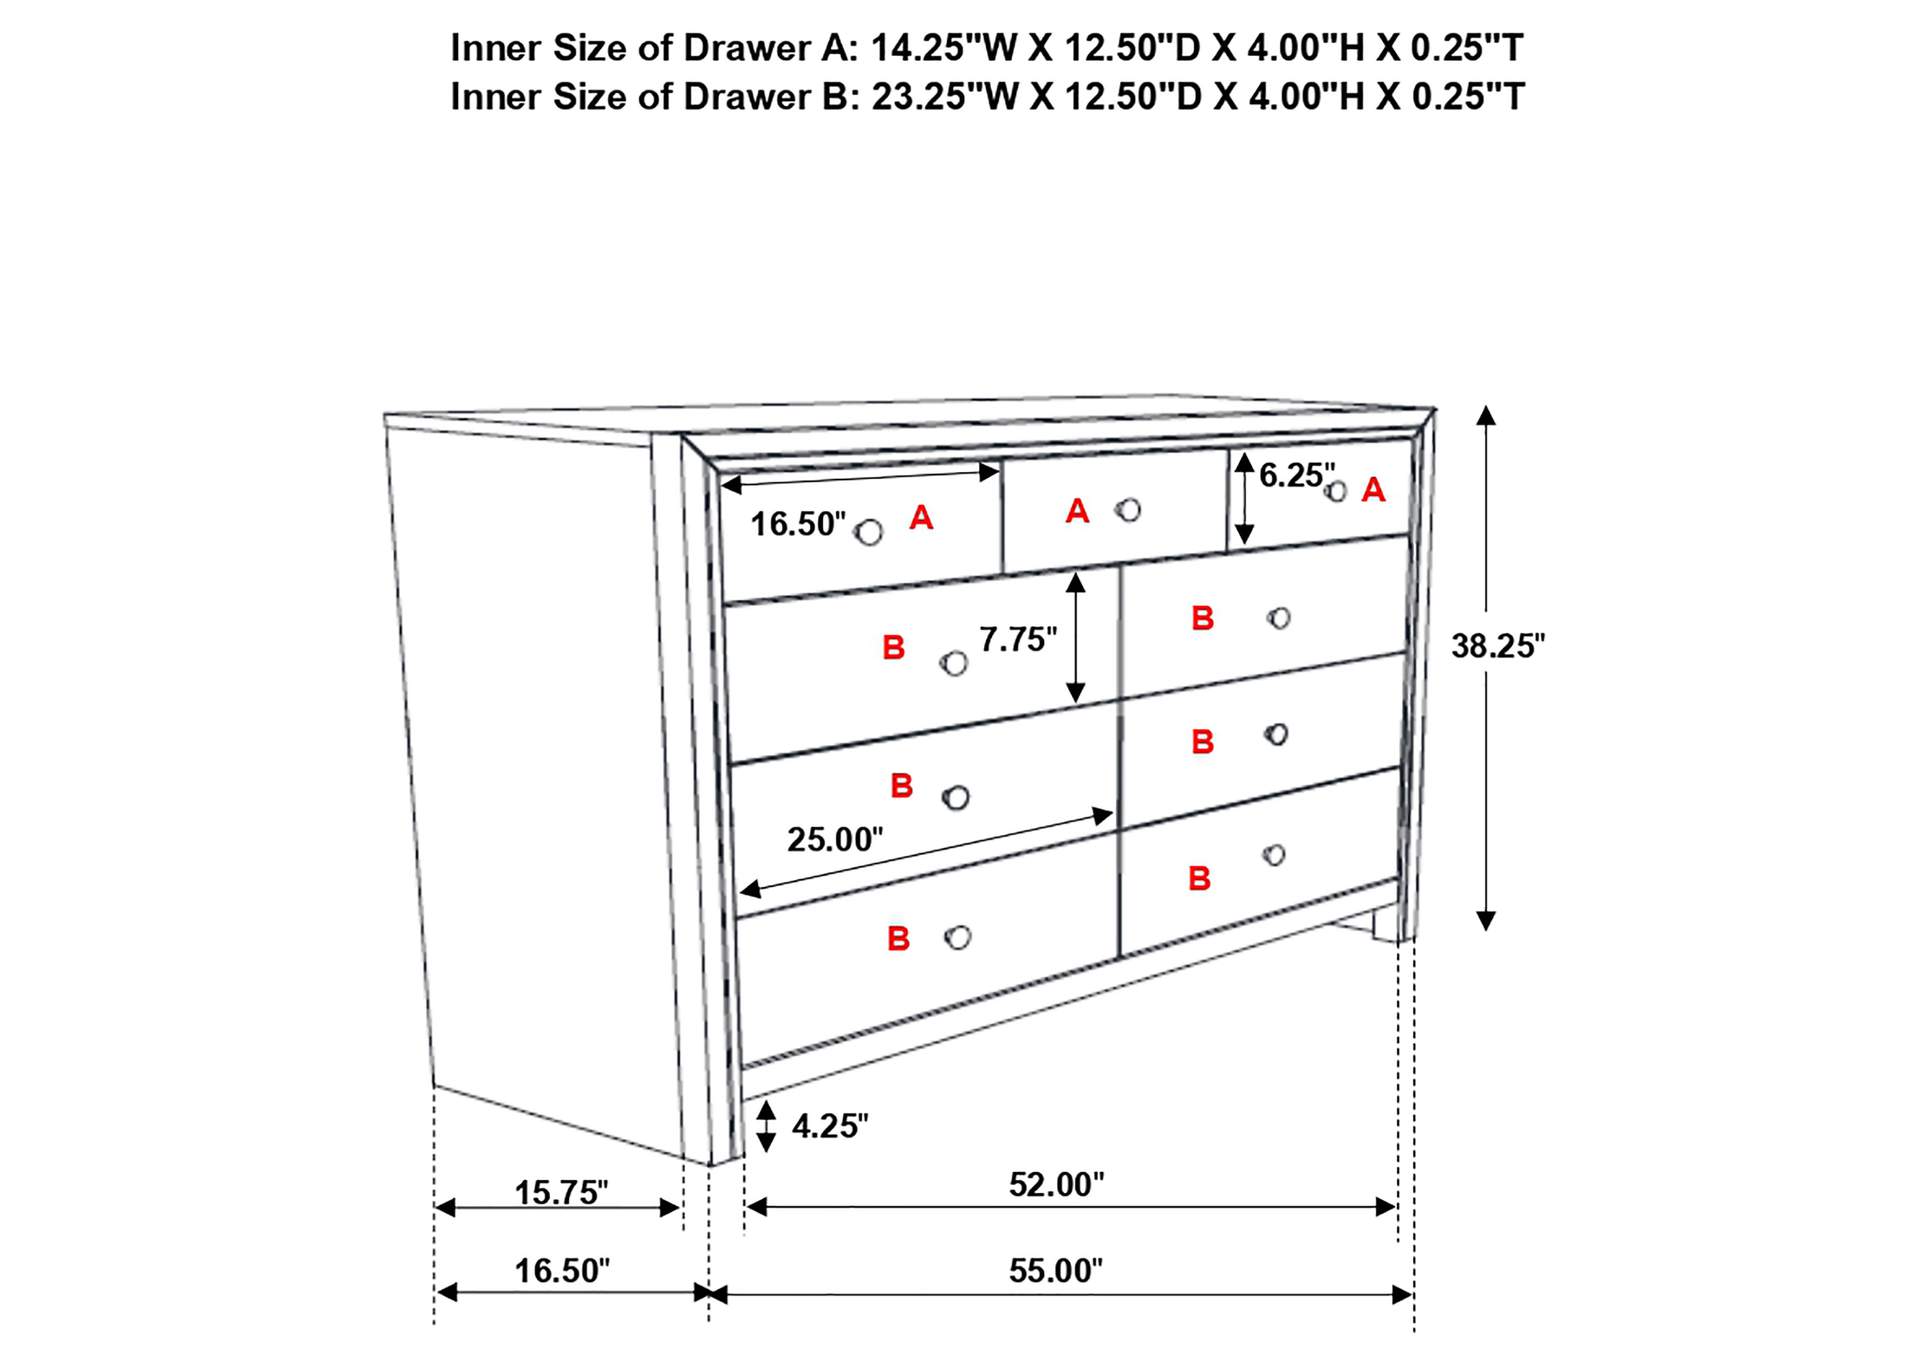 Serenity Rectangular 9-drawer Dresser Rich Merlot,Coaster Furniture